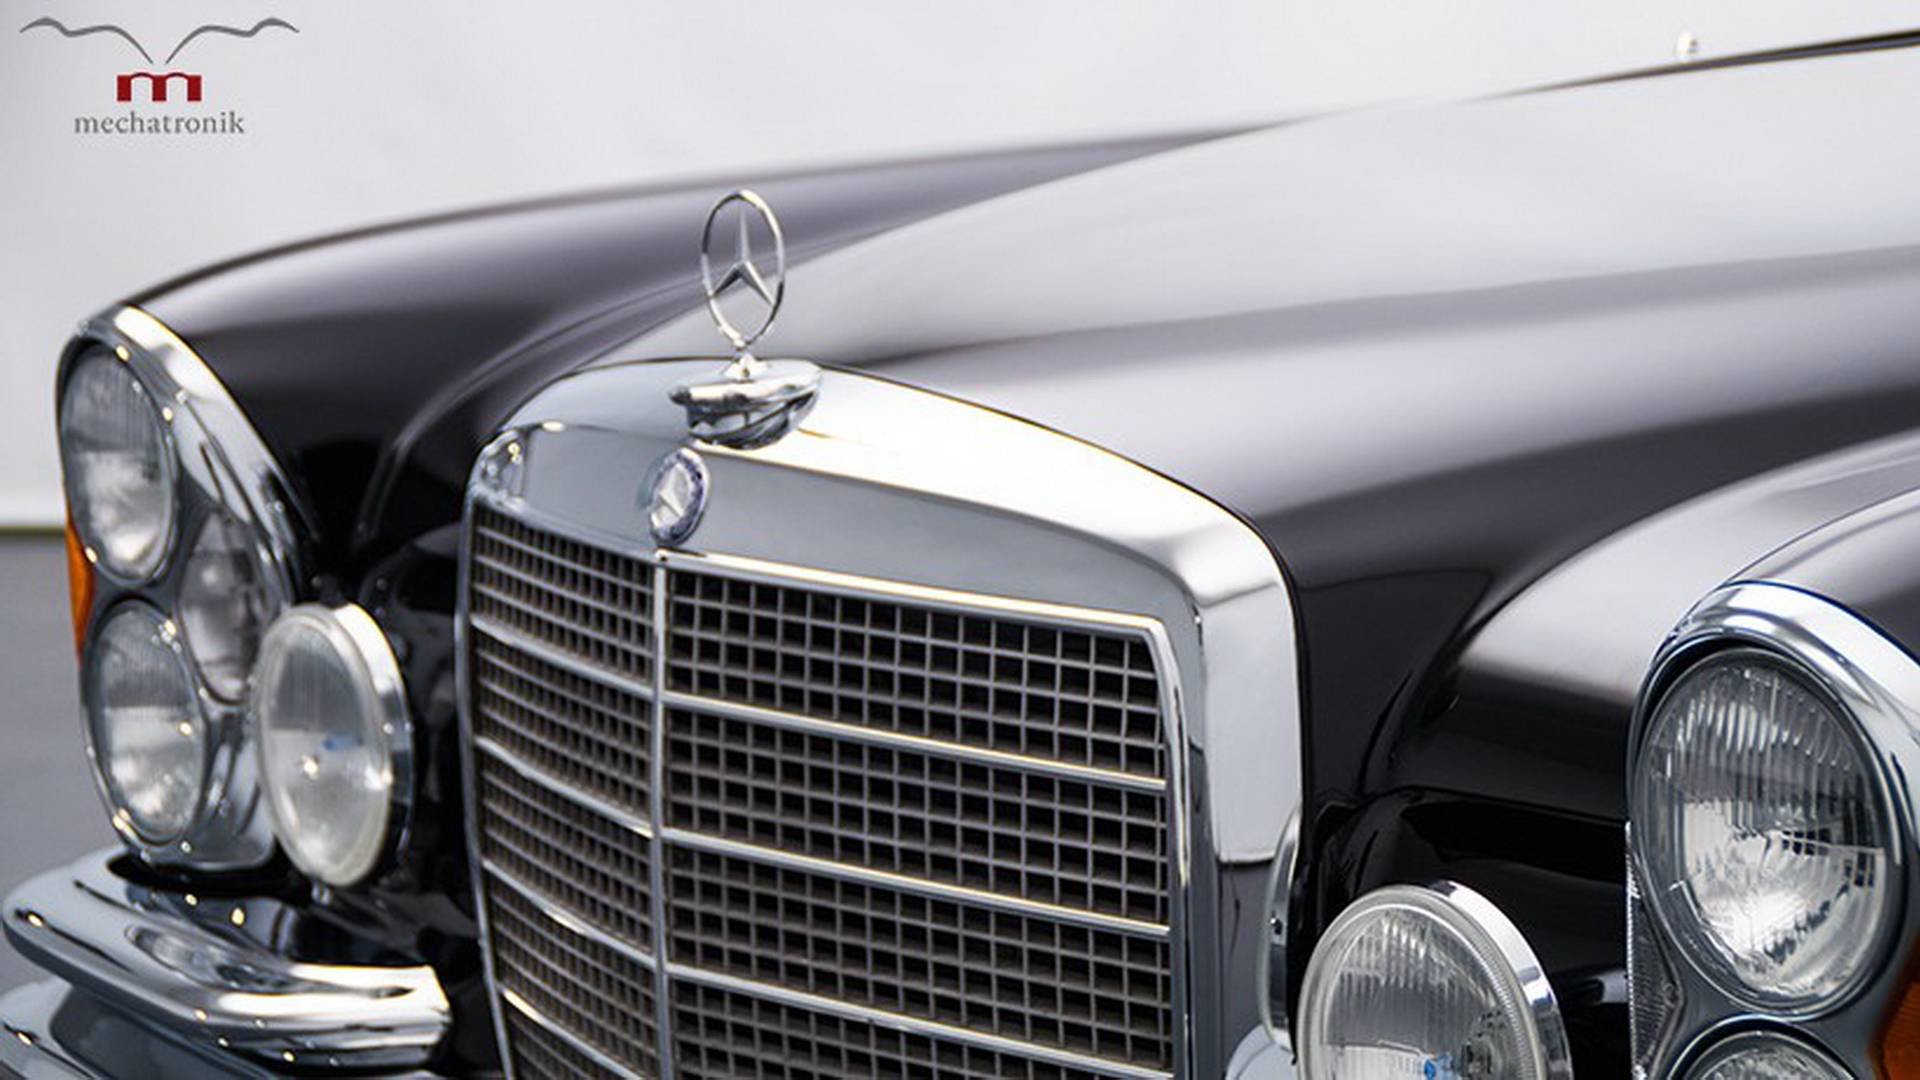 Mercedes-Benz W111 ukrývá pod kapotou moderní 5.5 litrovou V8 z dílny AMG